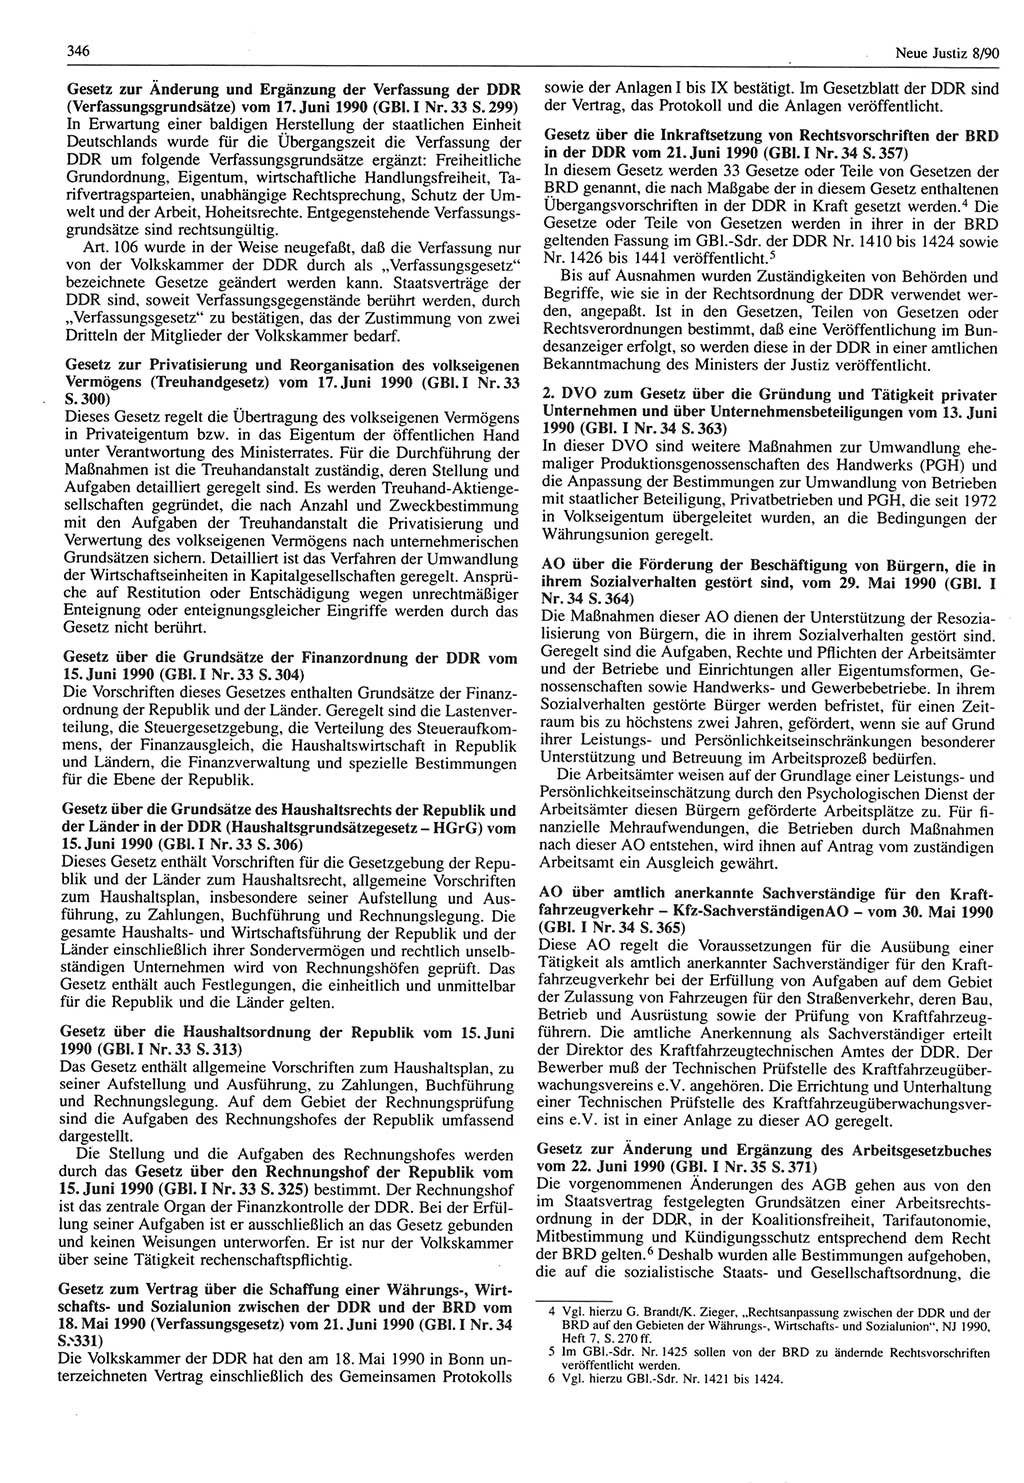 Neue Justiz (NJ), Zeitschrift für Rechtsetzung und Rechtsanwendung [Deutsche Demokratische Republik (DDR)], 44. Jahrgang 1990, Seite 346 (NJ DDR 1990, S. 346)